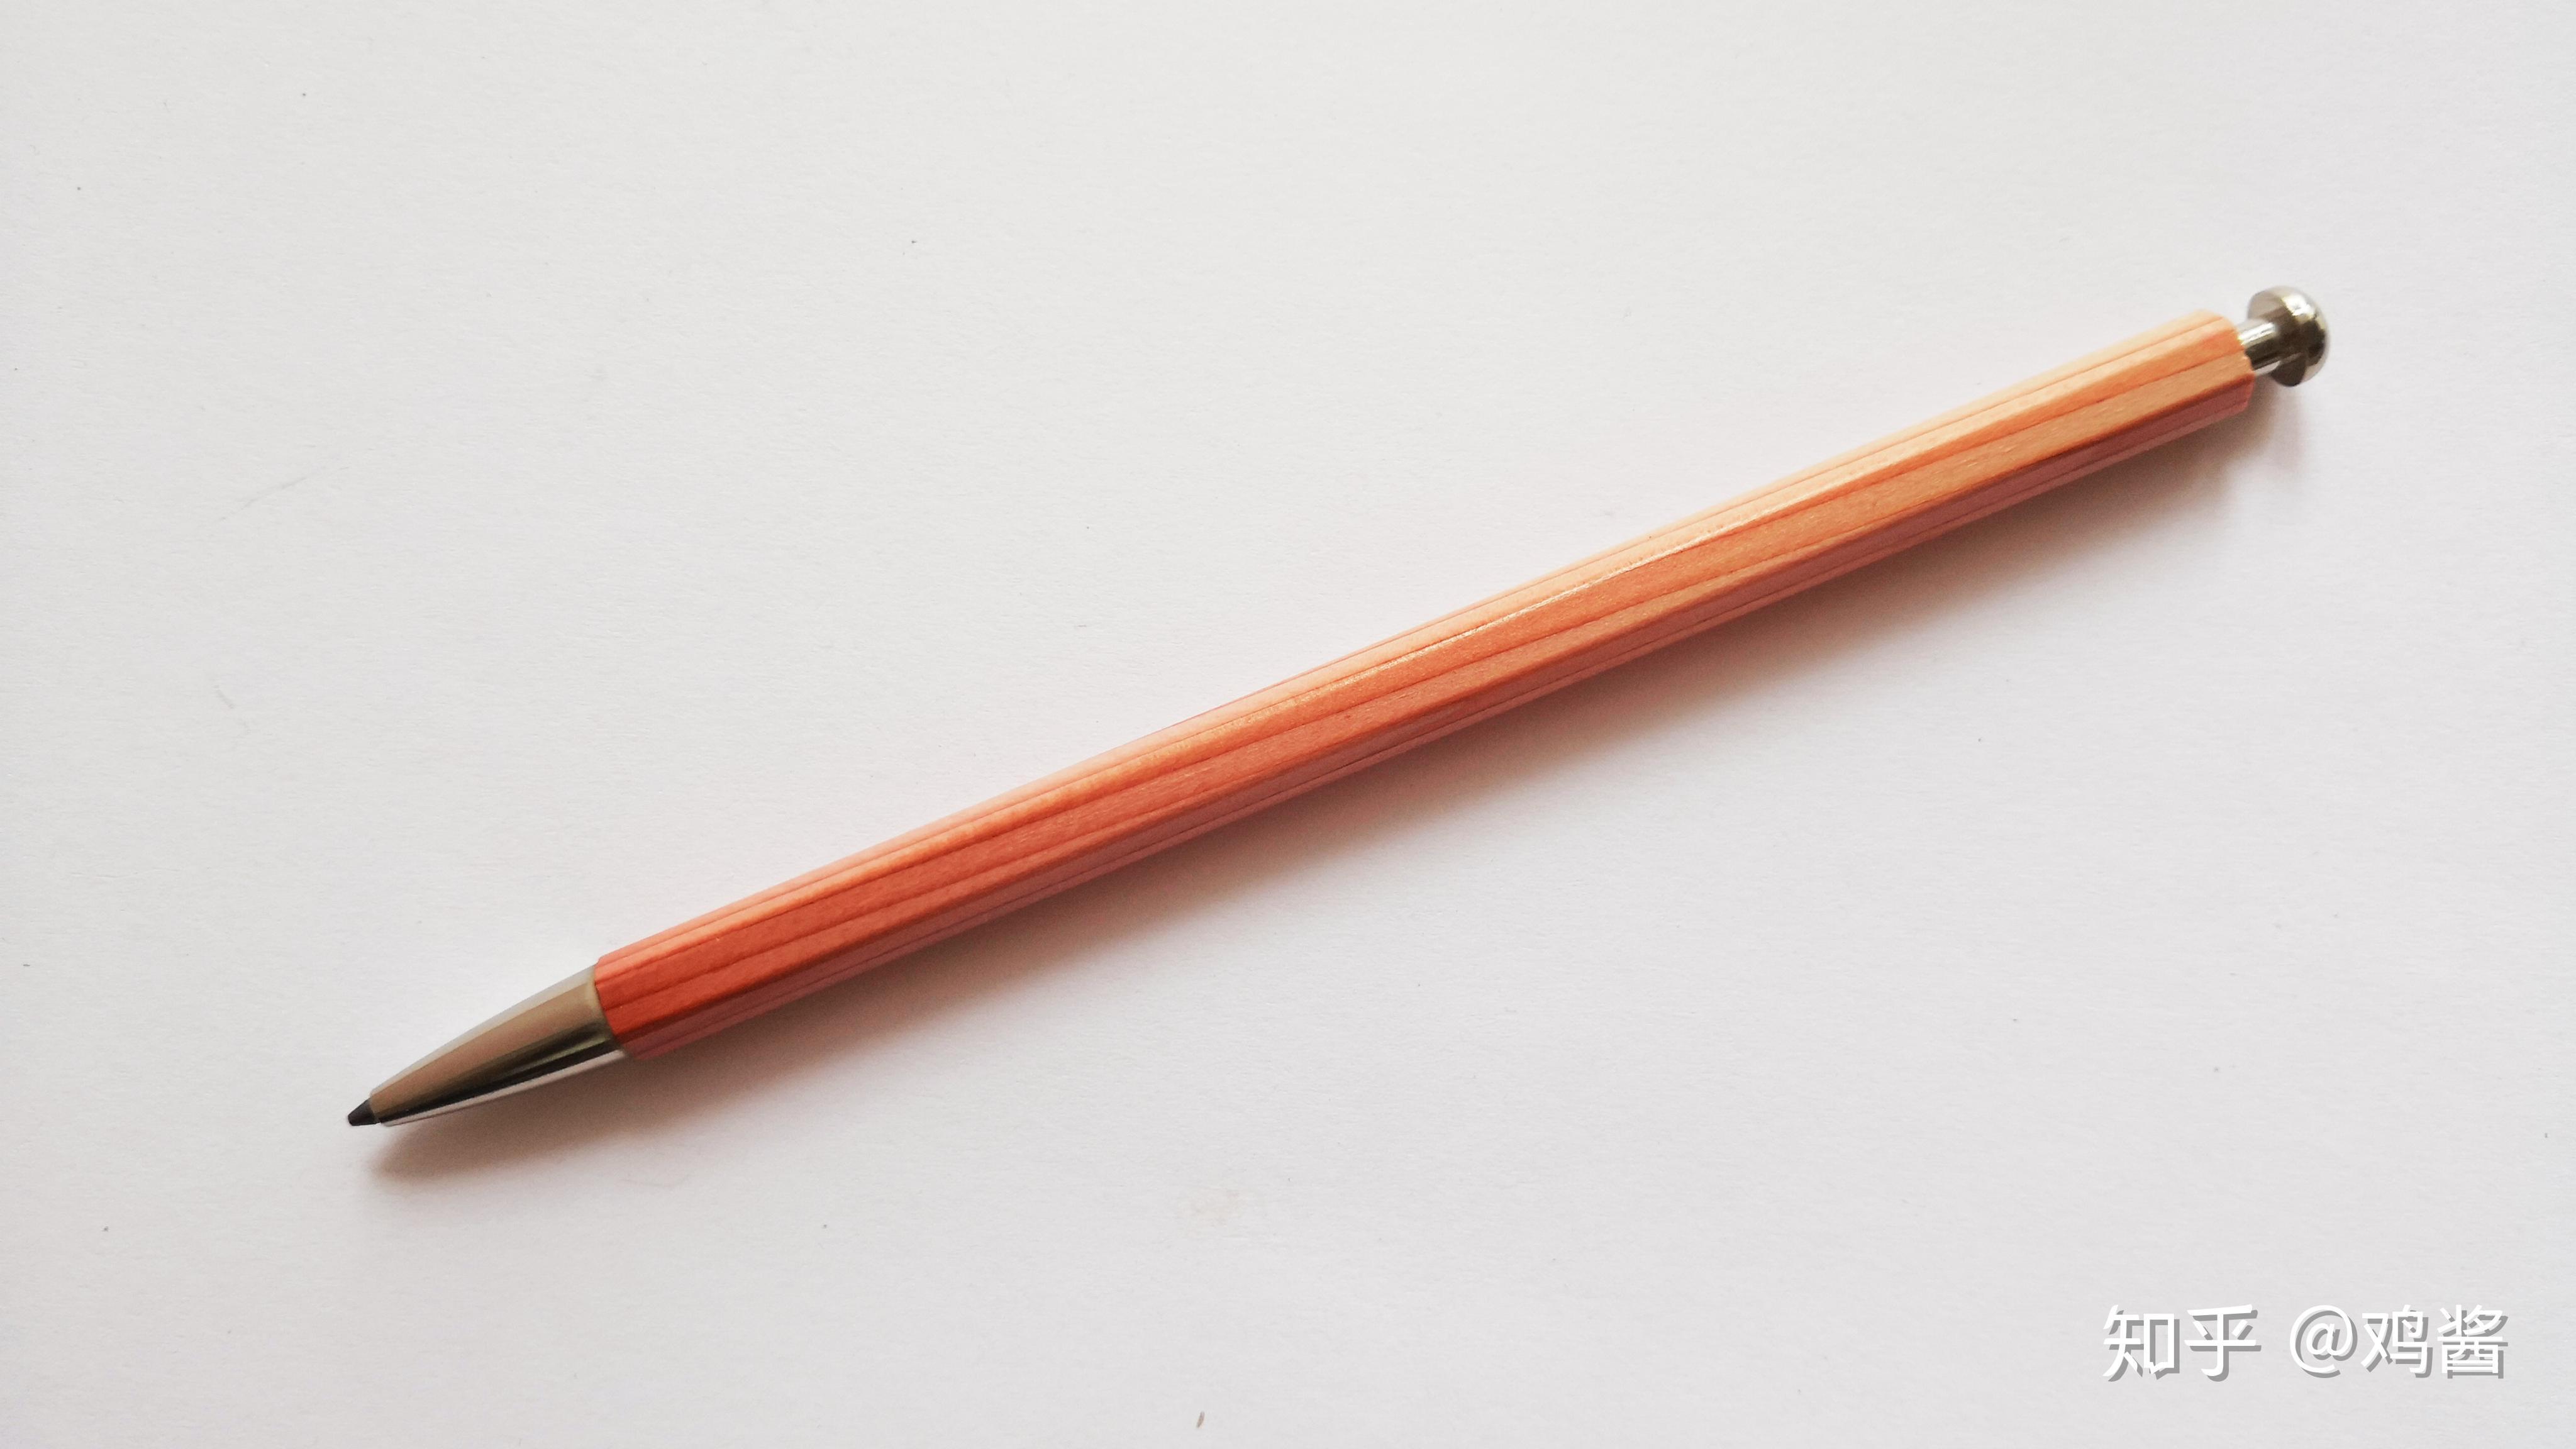 2支铅笔笔 库存图片. 图片 包括有 子项, 研究, 对象, 圆珠笔, 有峰, 黄色, 蜡笔, 上色, 宏指令 - 6425133